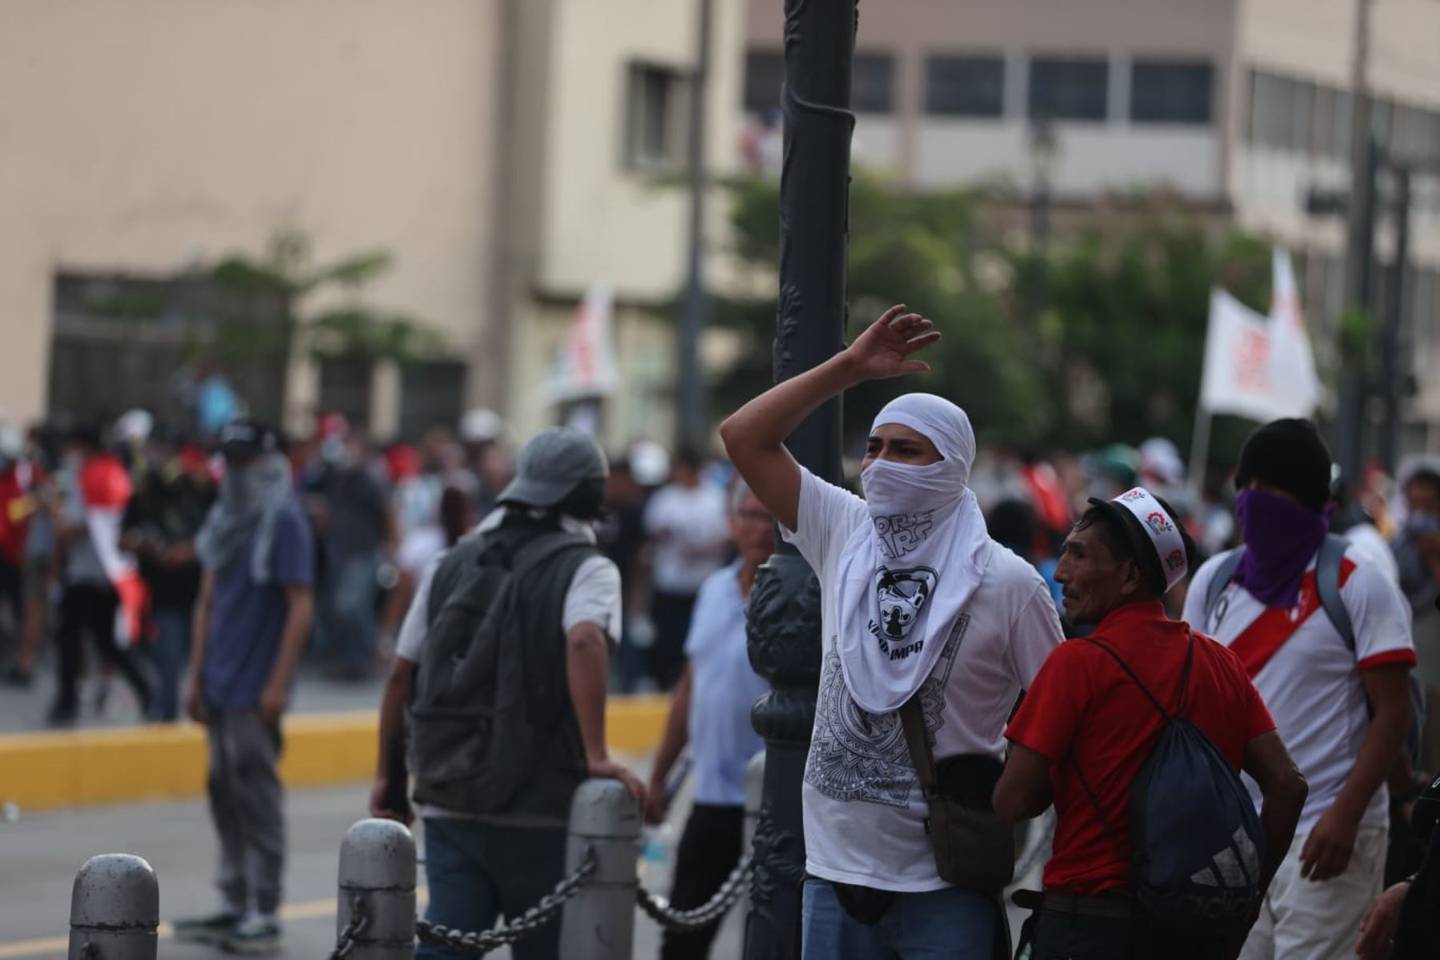 Según la Defensoría del Pueblo, se tiene el registro de 219 conflictos
sociales que dio lugar a 1261 acciones colectivas de protesta.